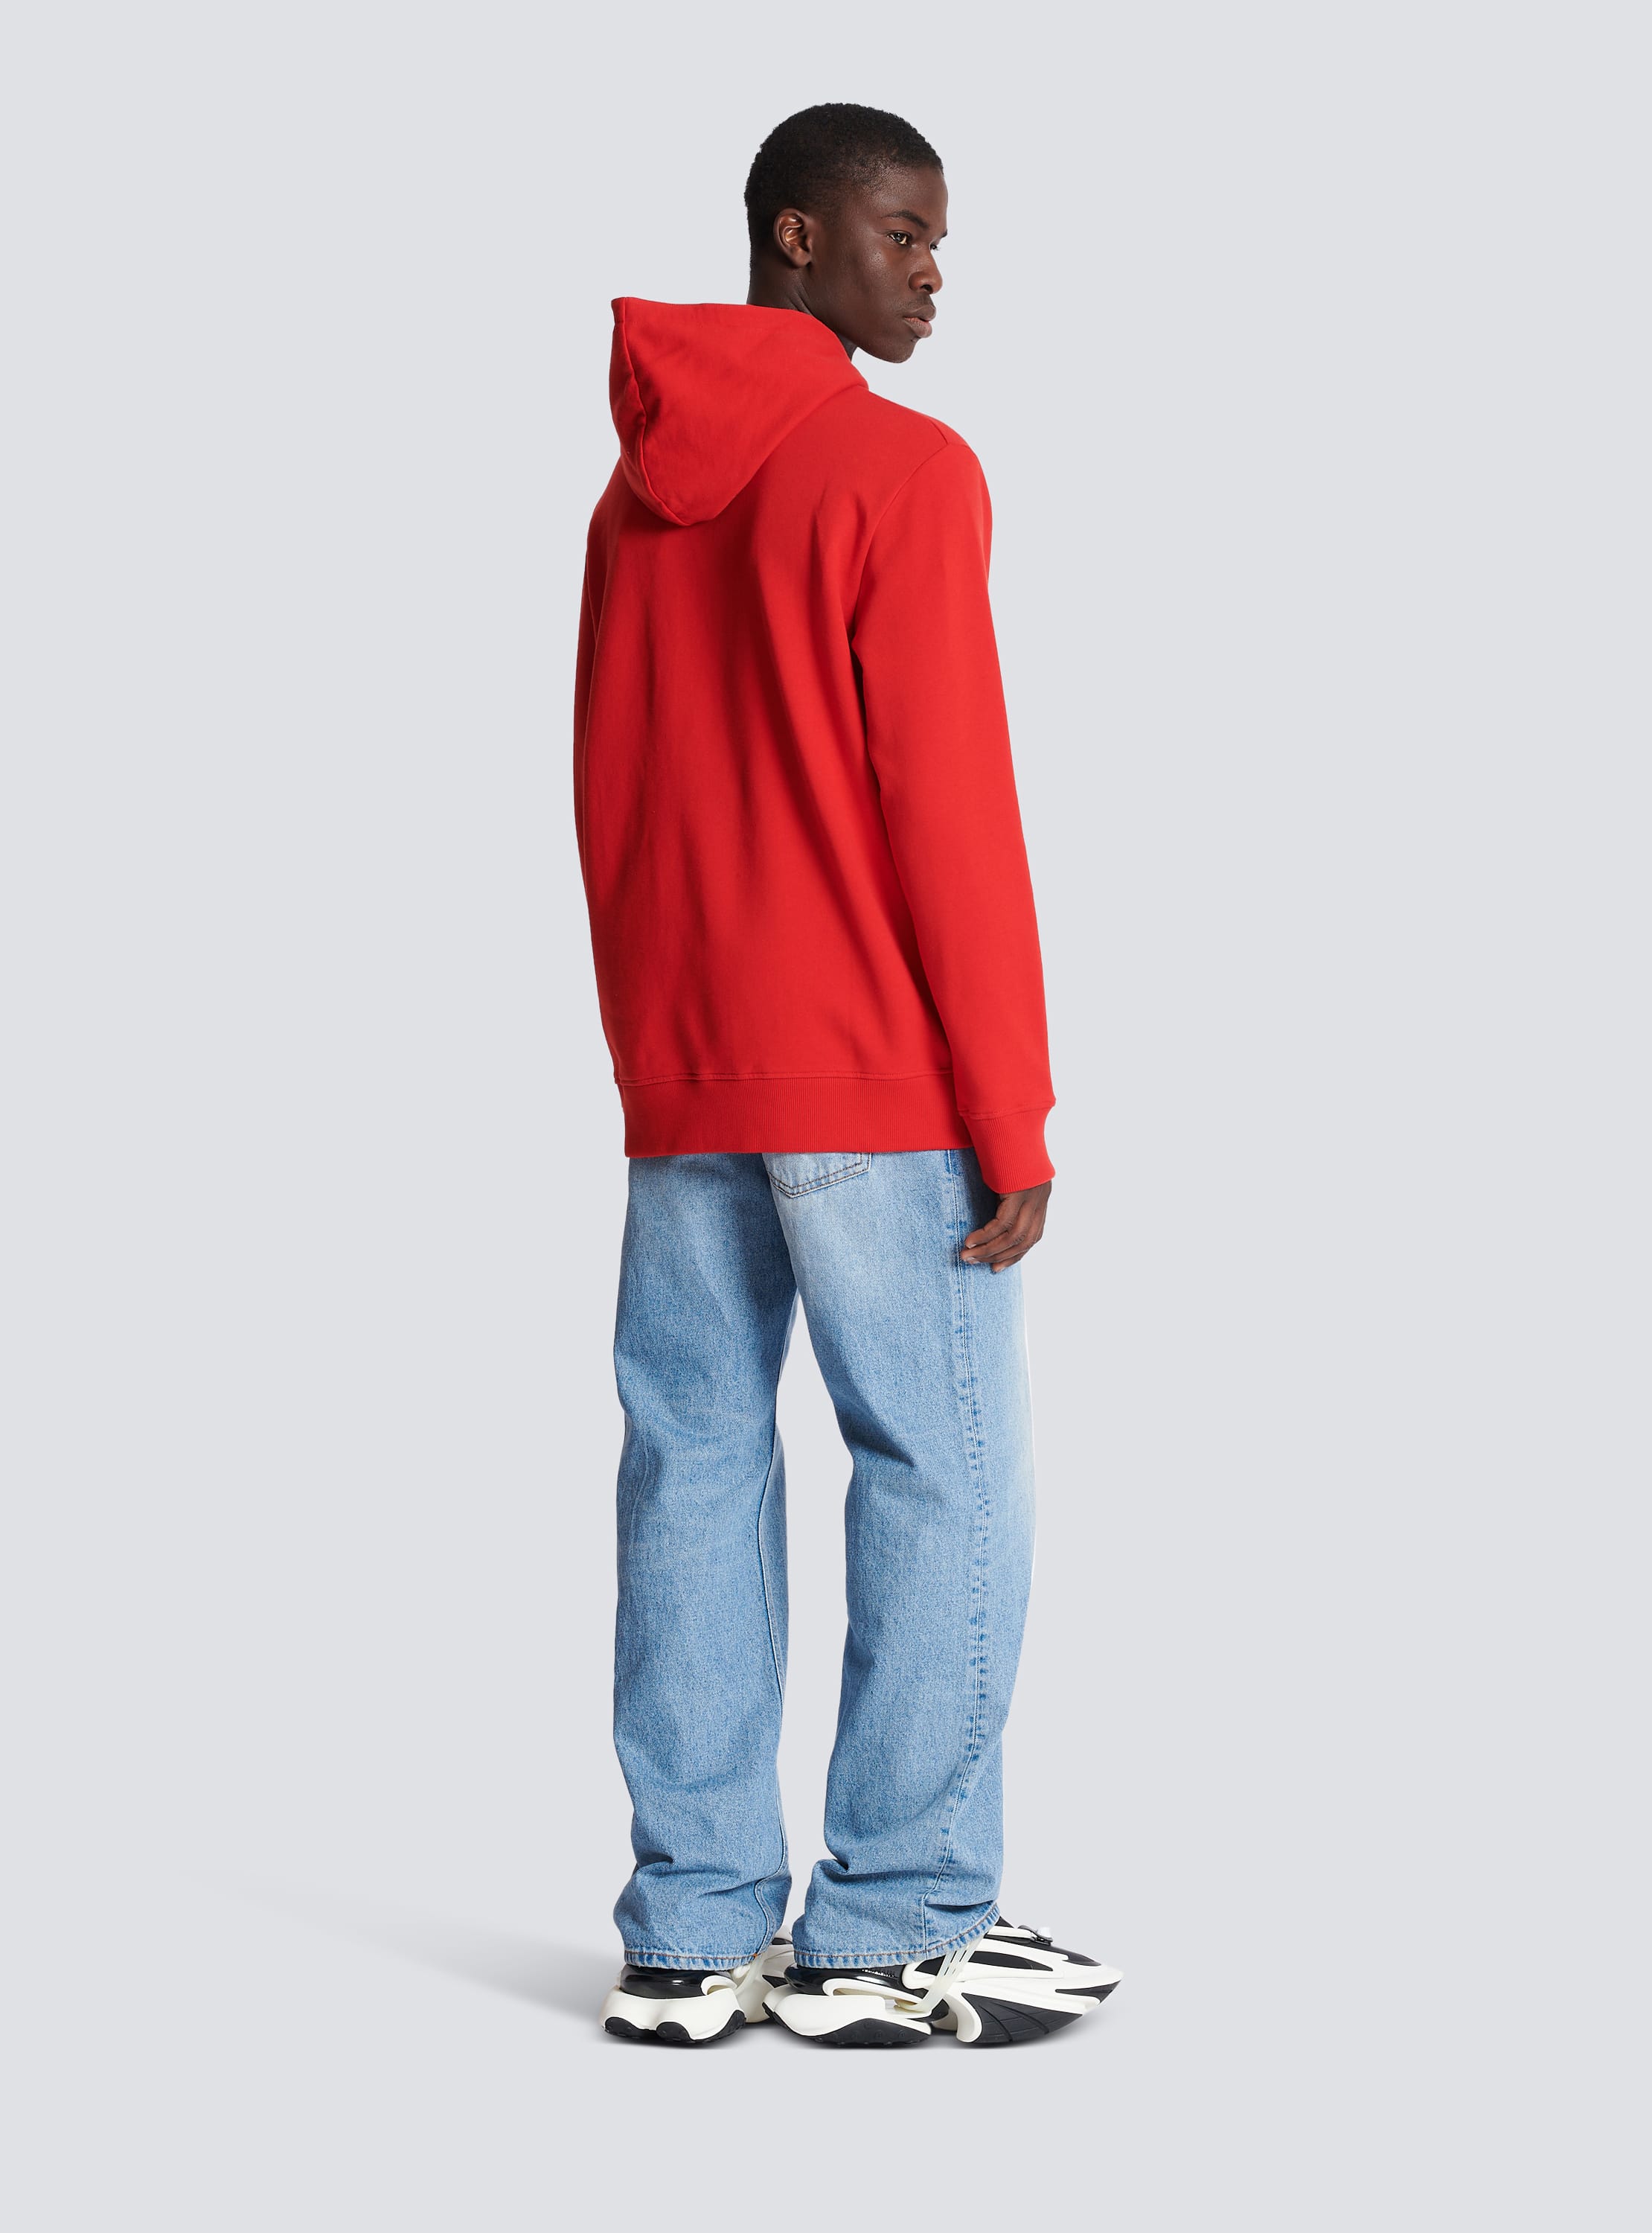 Melankoli Grundlægger miste dig selv Embossed Balmain hooded sweatshirt red - Men | BALMAIN